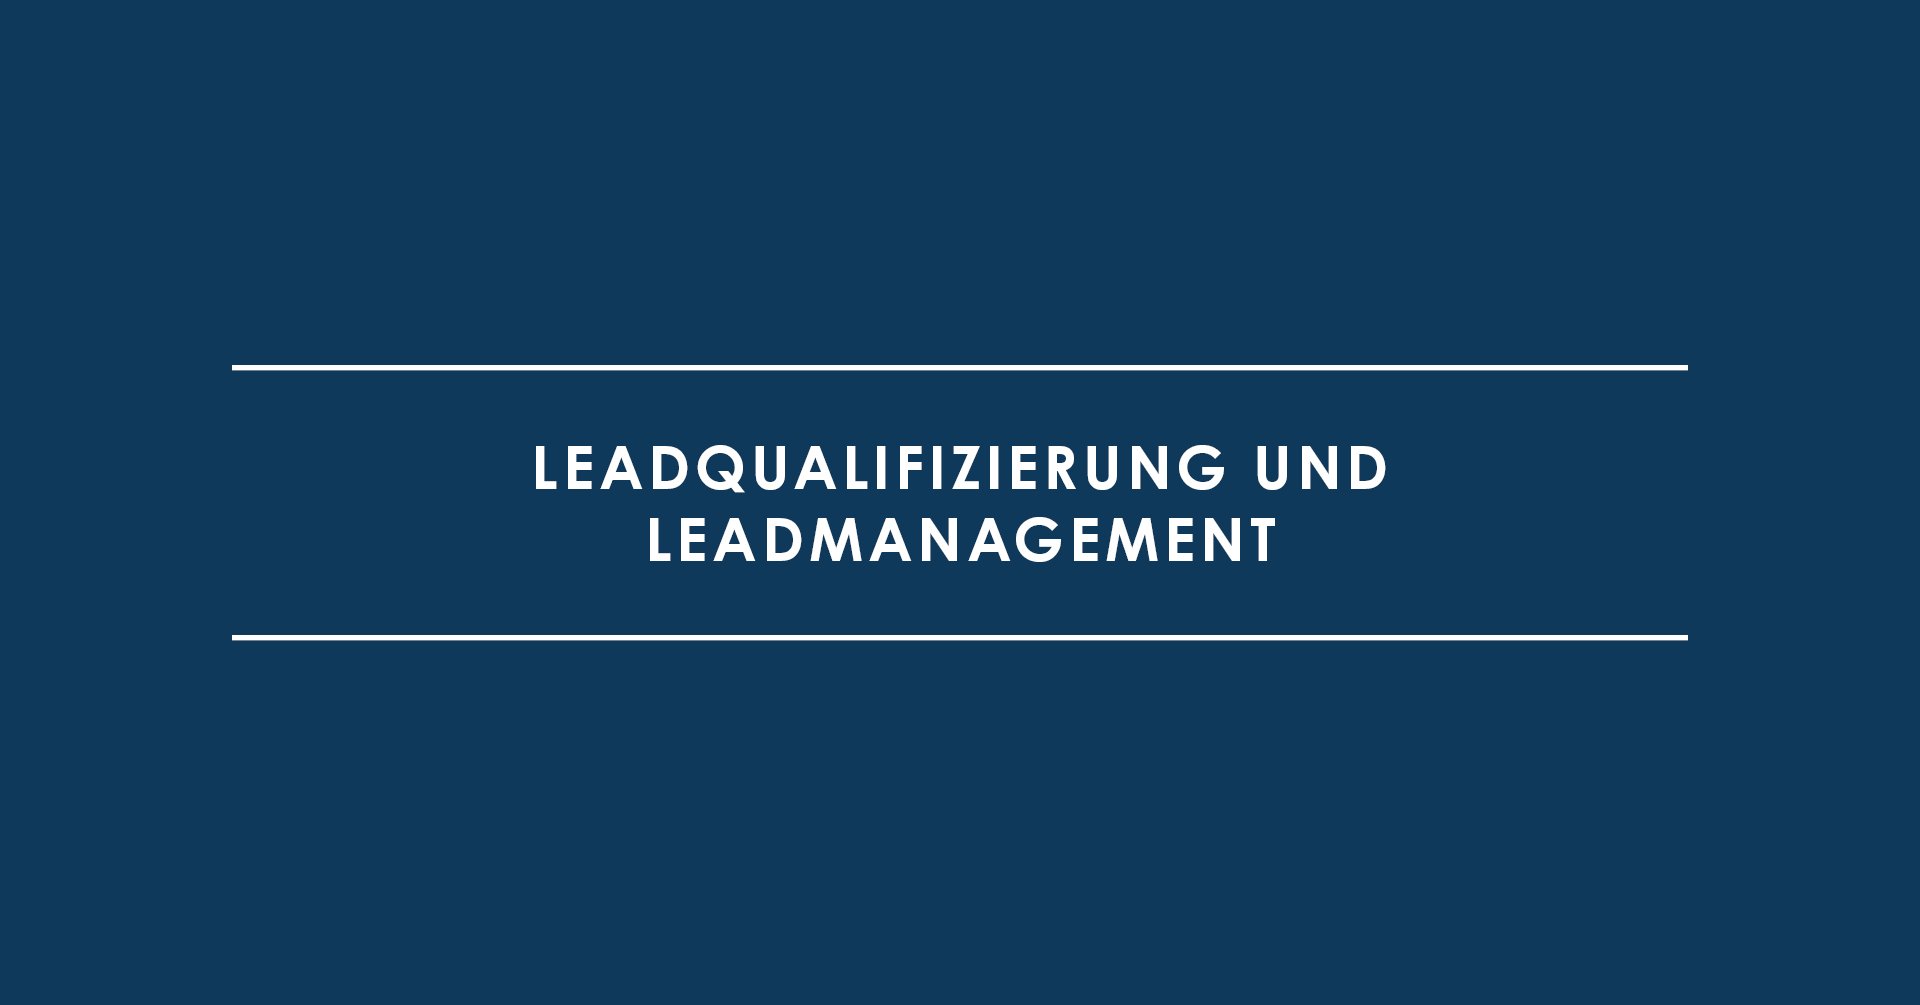 Leadqualifizierung und Leadmanagement